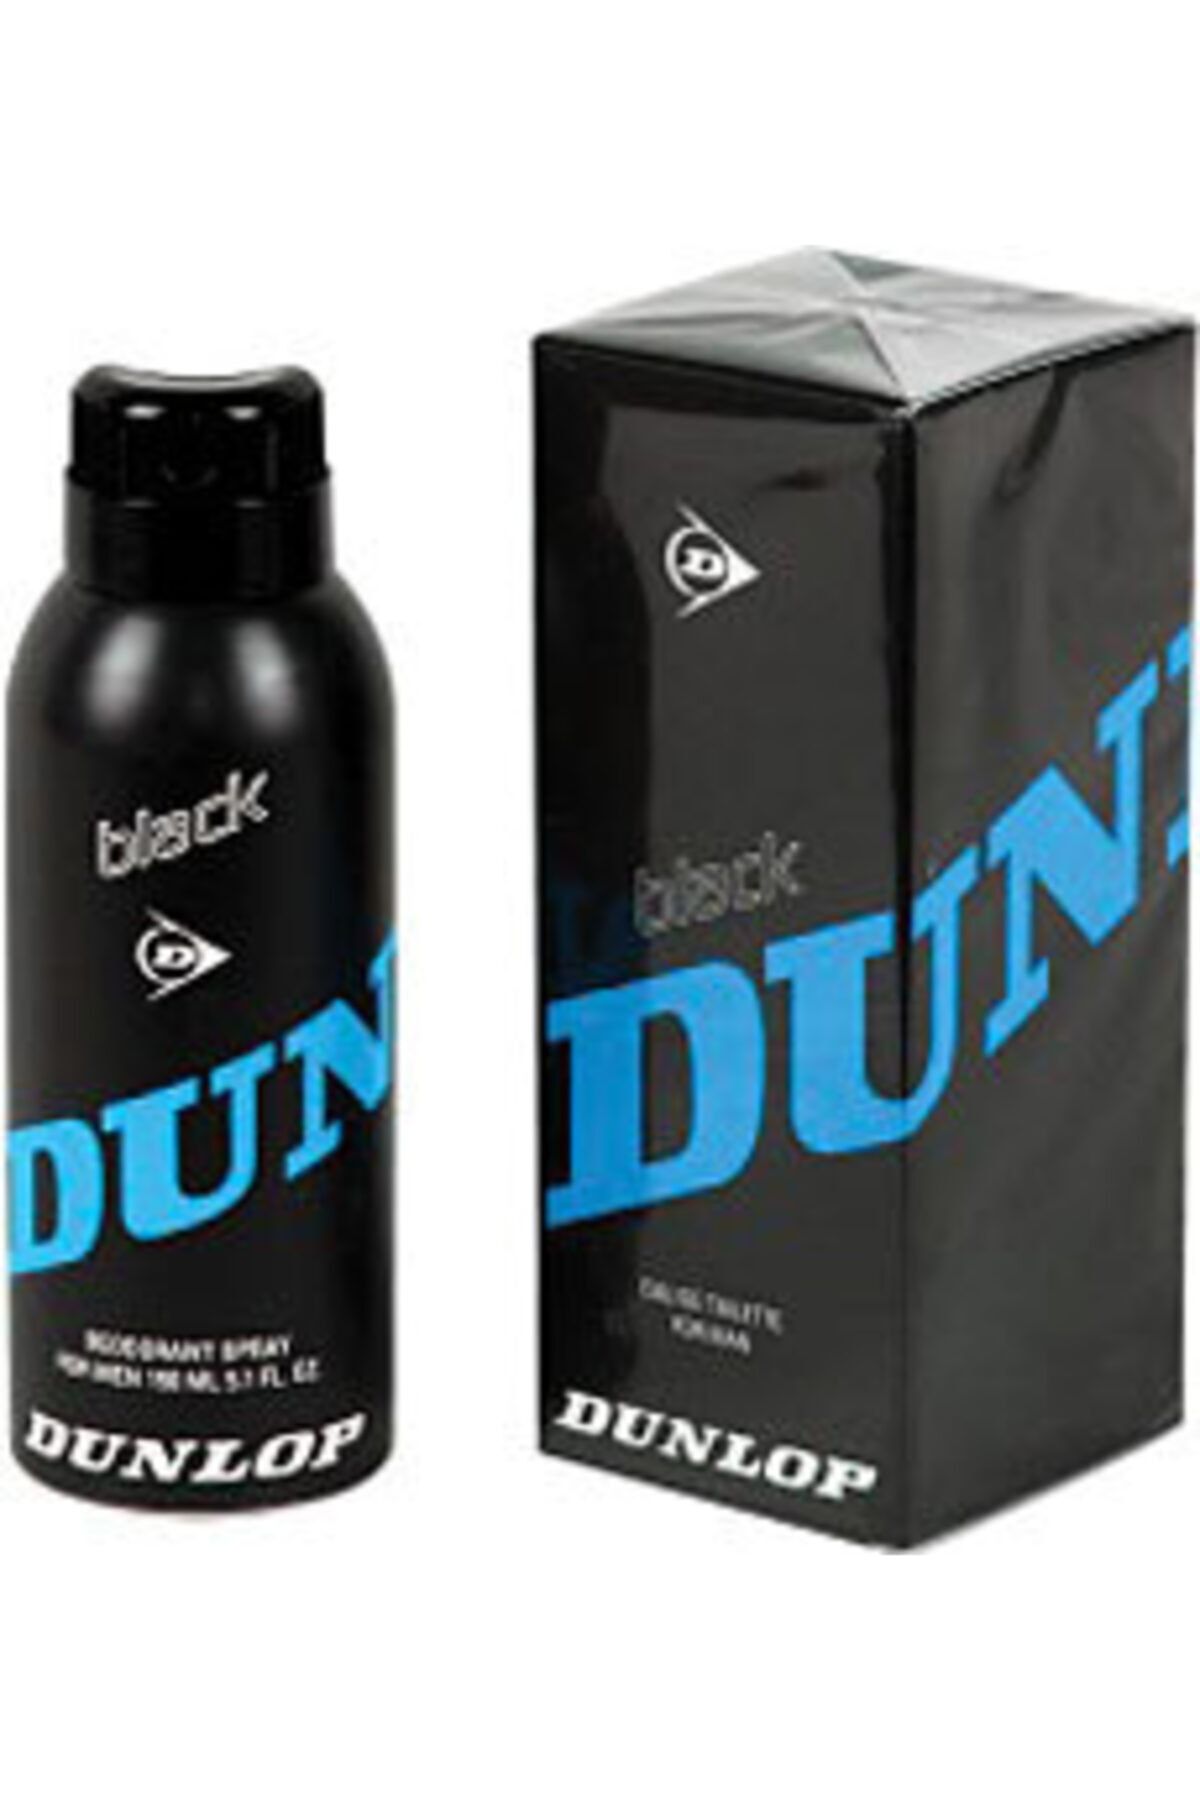 Dunlop Black Bay Edt 125 Ml Mavi